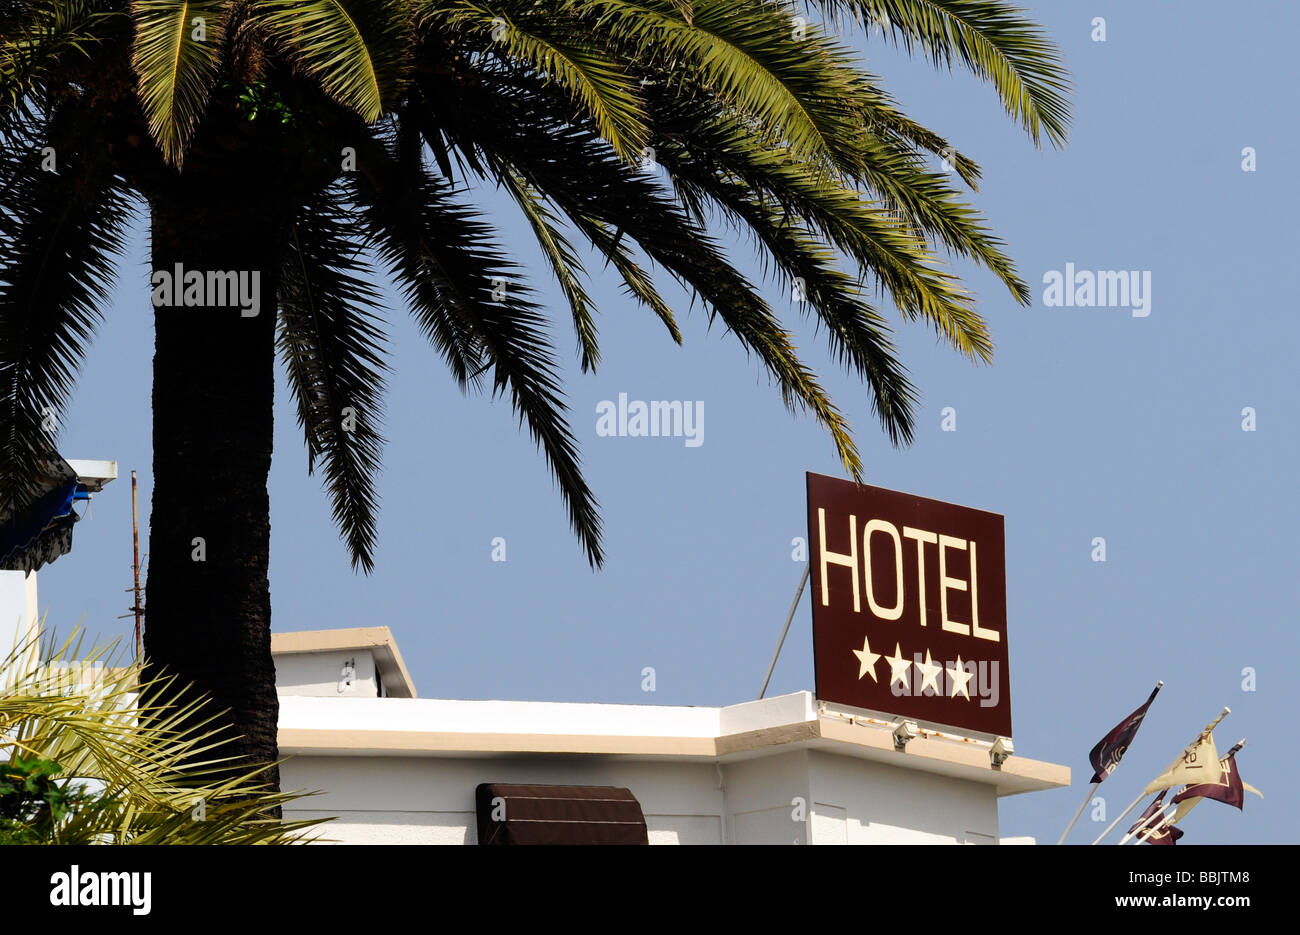 Ein 4-Sterne Hotel Zeichen vor einem blauen Himmel und Palmen Baum Hintergrund, in Cannes, Côte d ' Azur, Südfrankreich Stockfoto